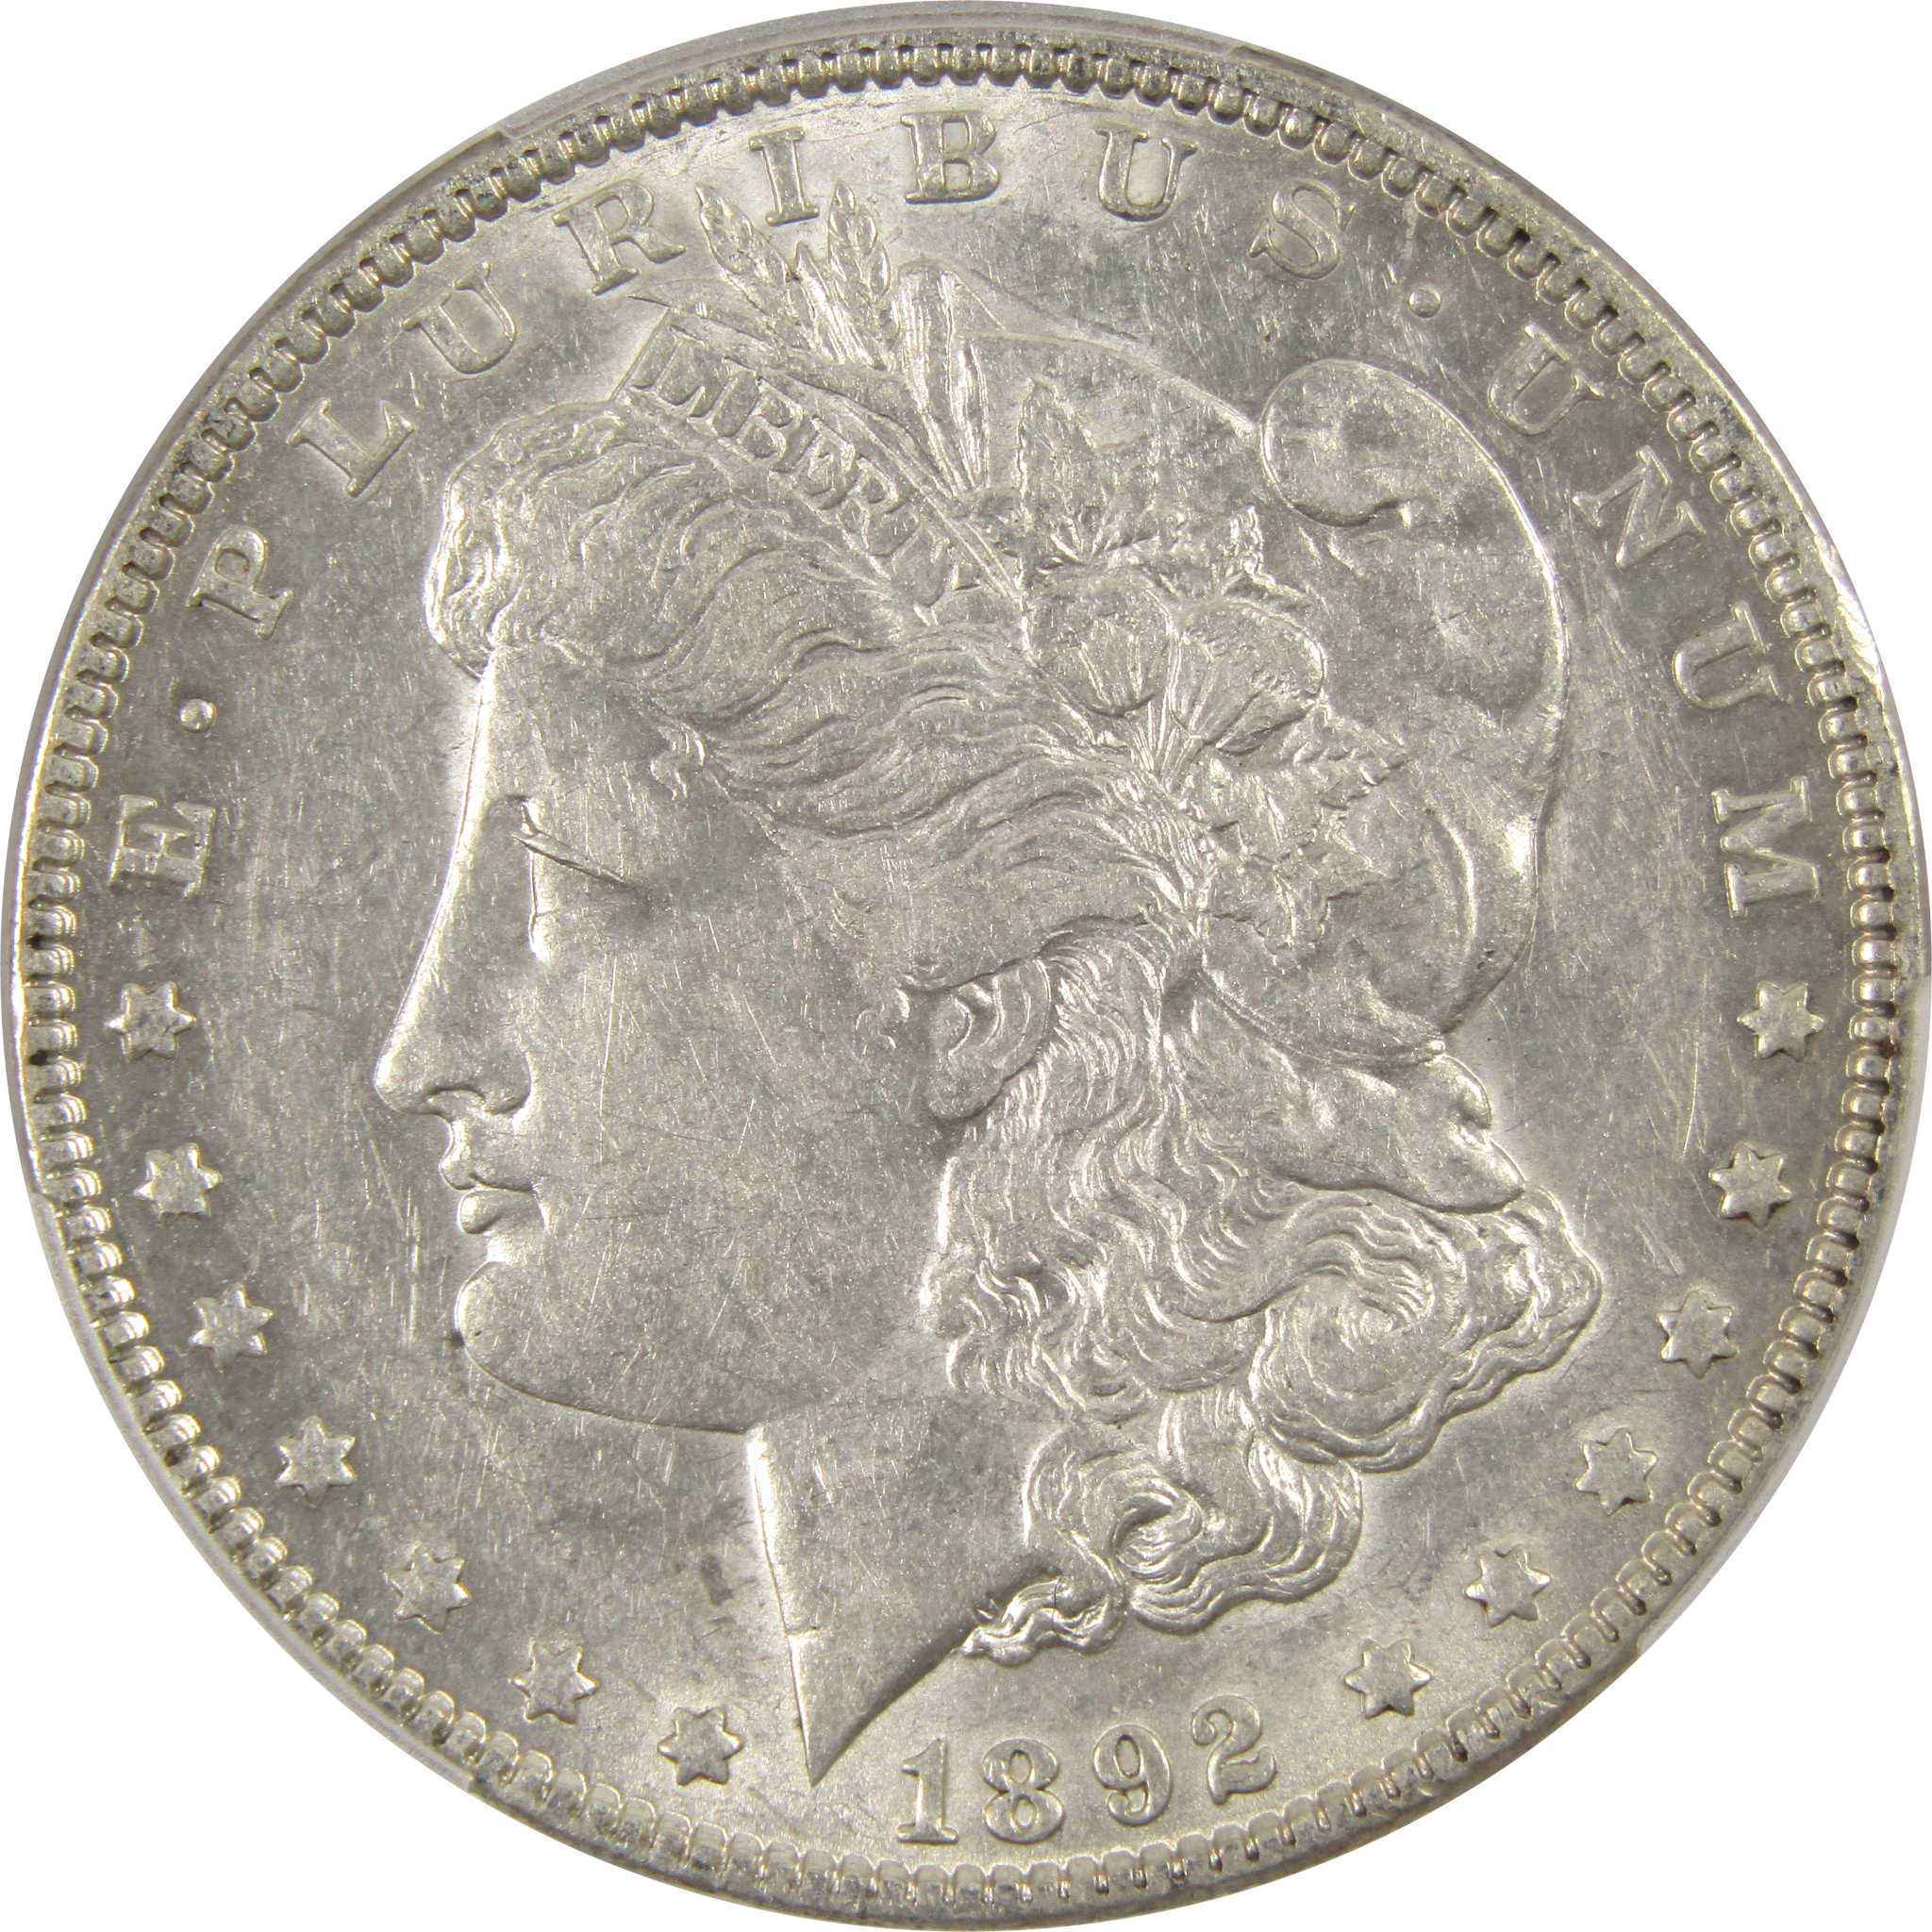 1892 Morgan Dollar AU 53 PCGS 90% Silver $1 Coin SKU:I9124 - Morgan coin - Morgan silver dollar - Morgan silver dollar for sale - Profile Coins &amp; Collectibles